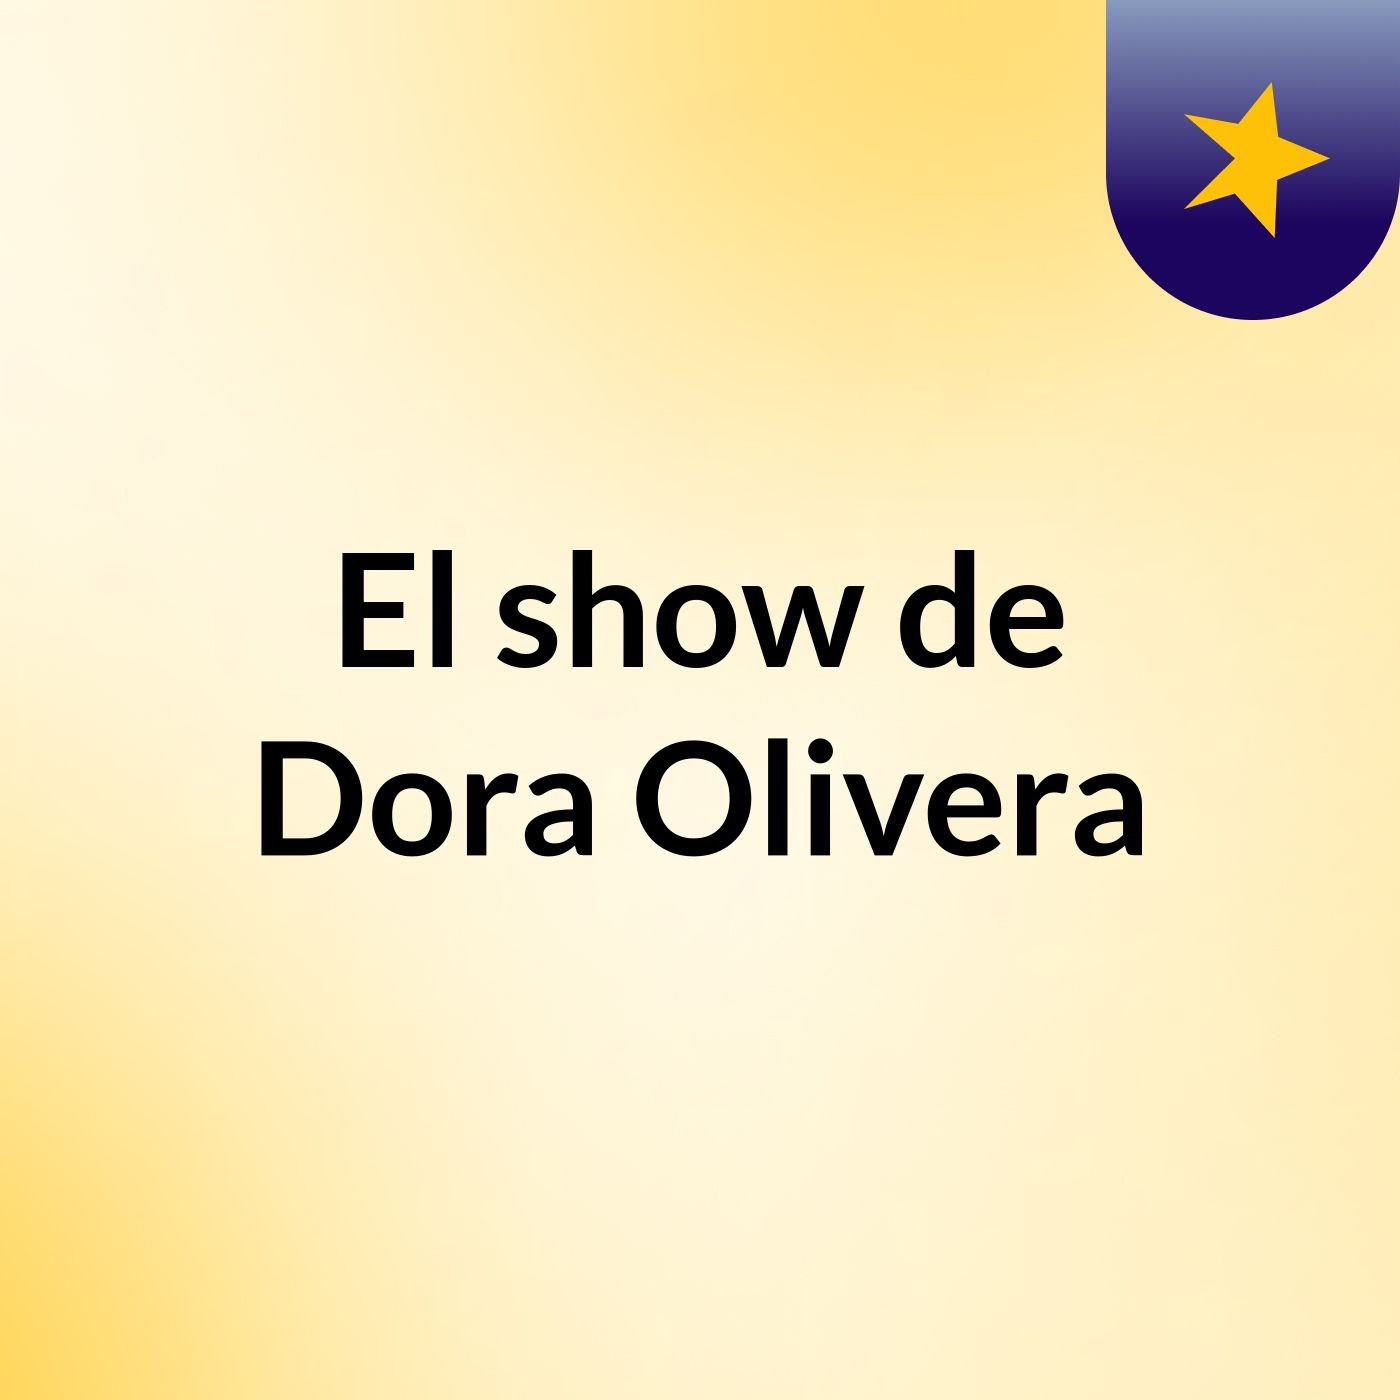 El show de Dora Olivera